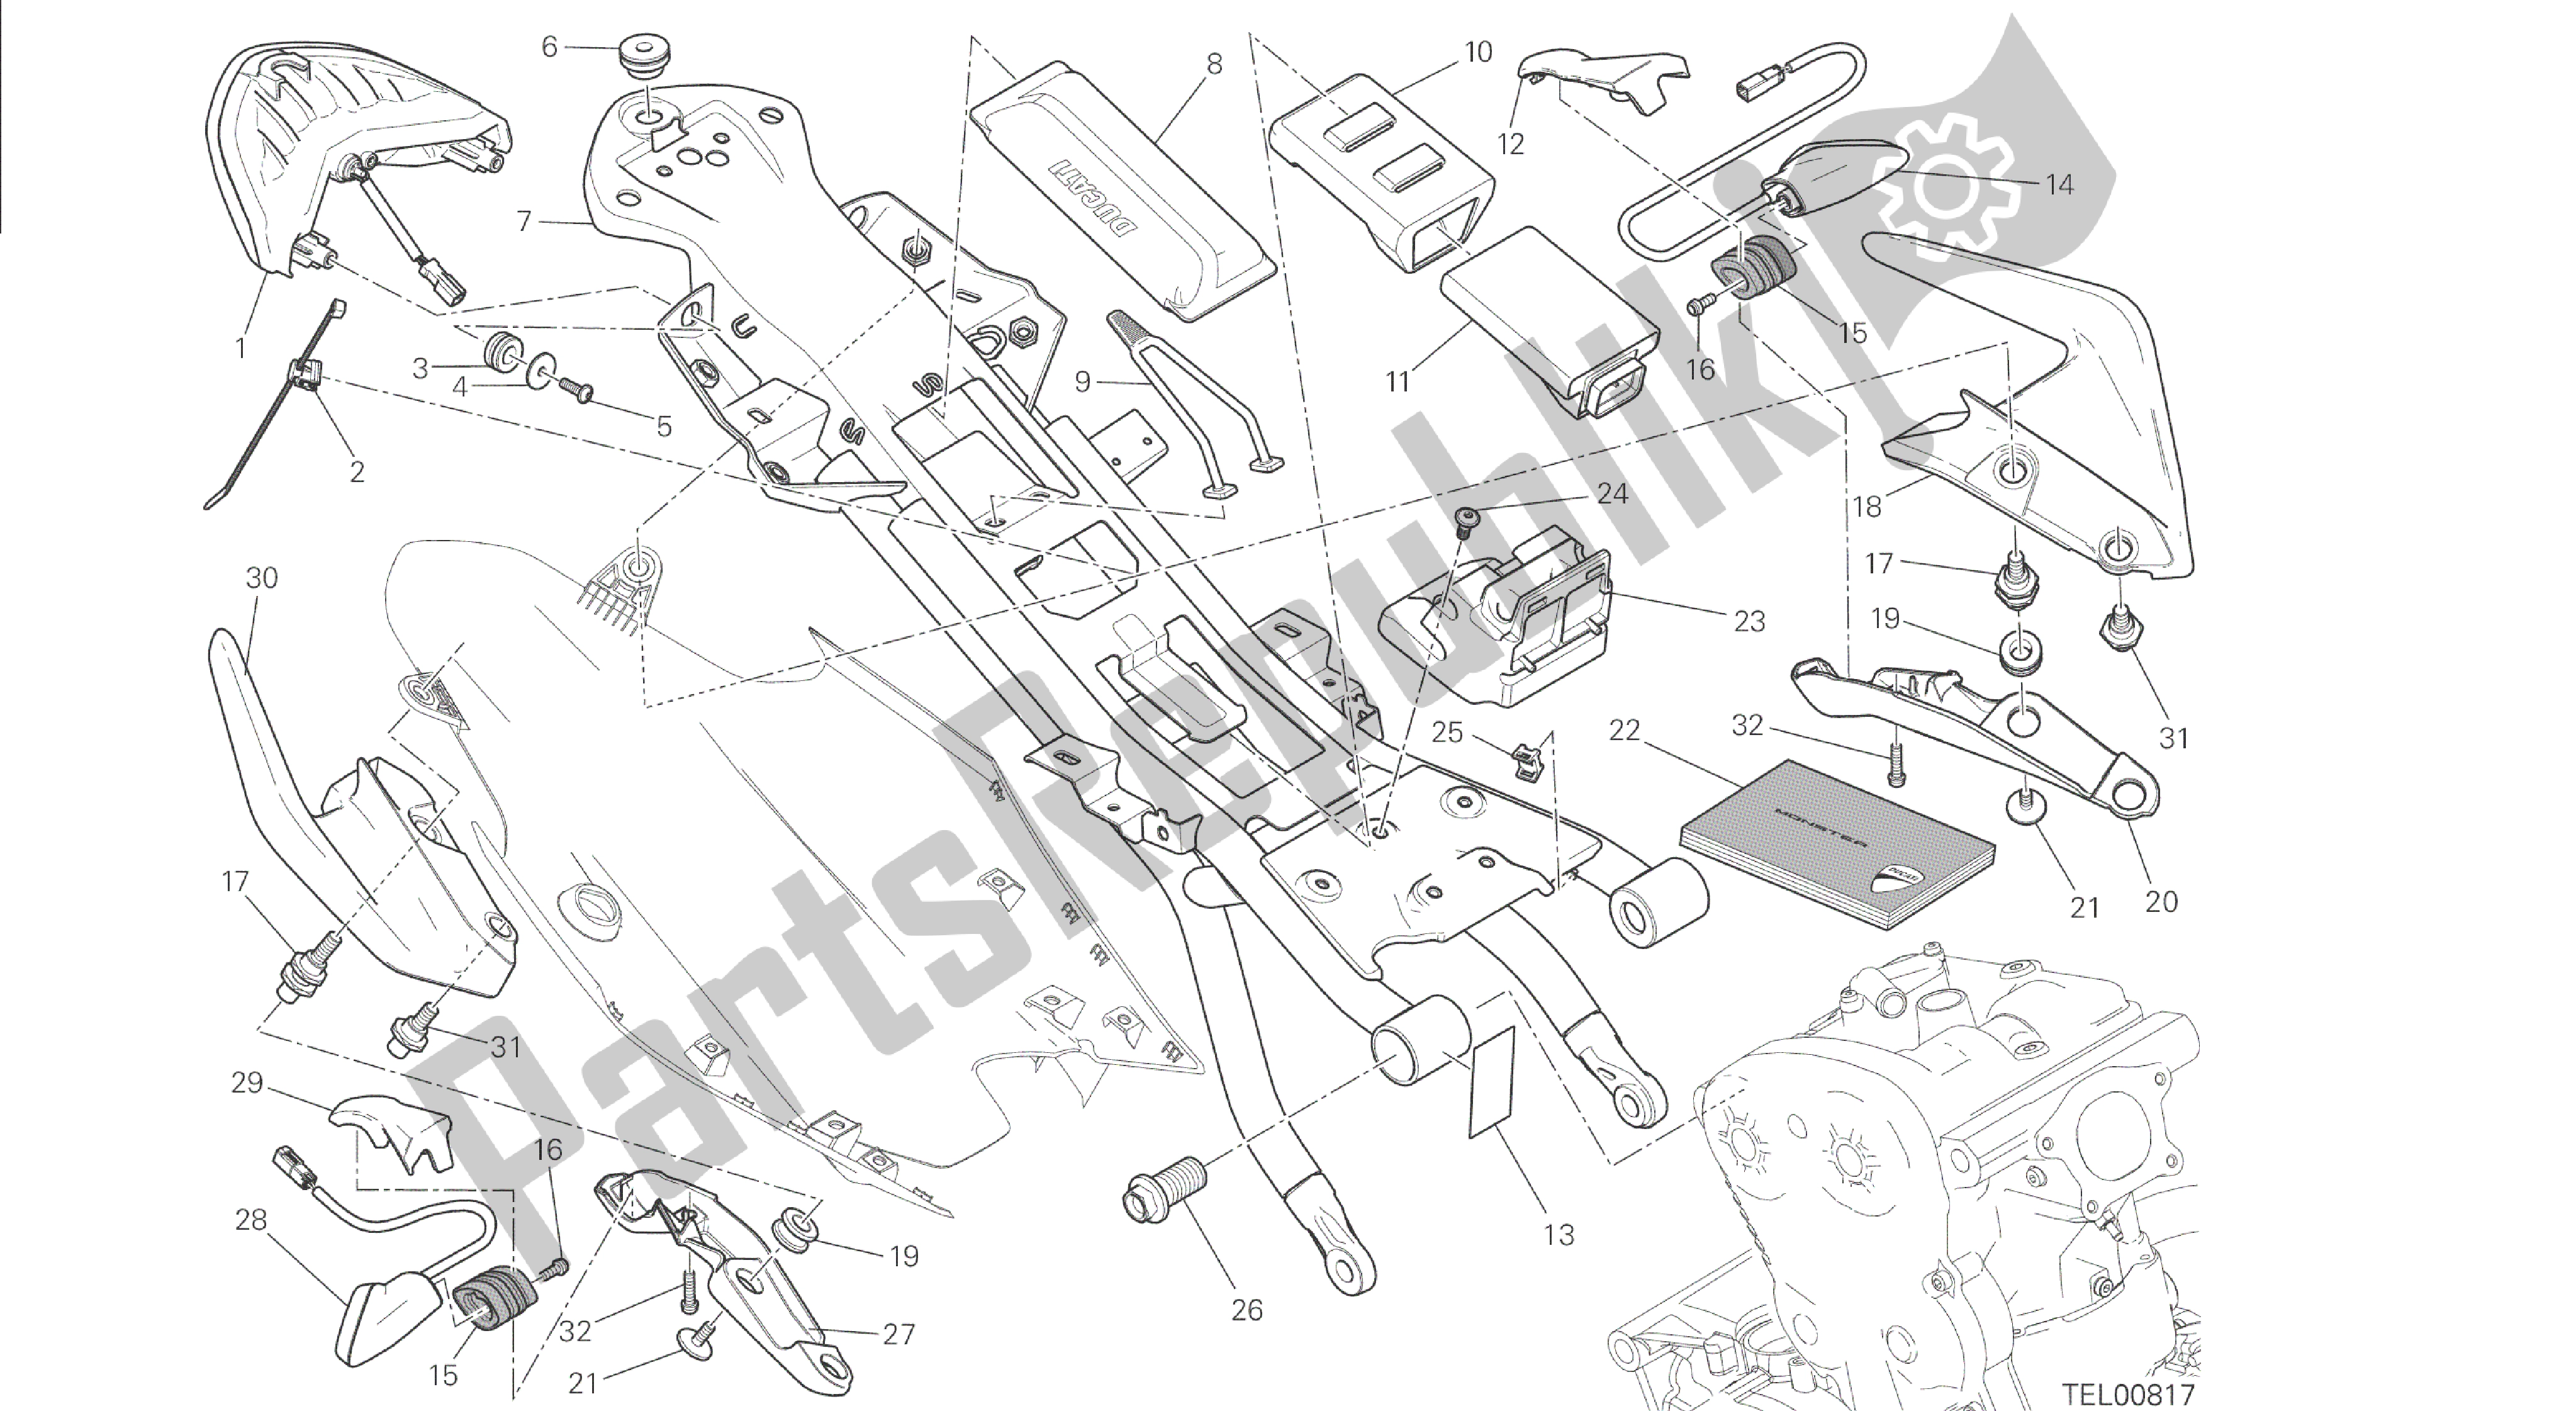 Todas las partes para Dibujo 027 - Cuadro Trasero Comp. [mod: M 1200s; Xst: Aus, Chn, Eur, Fra, Jap, Twn] Marco De Grupo de Ducati Monster S 1200 2015